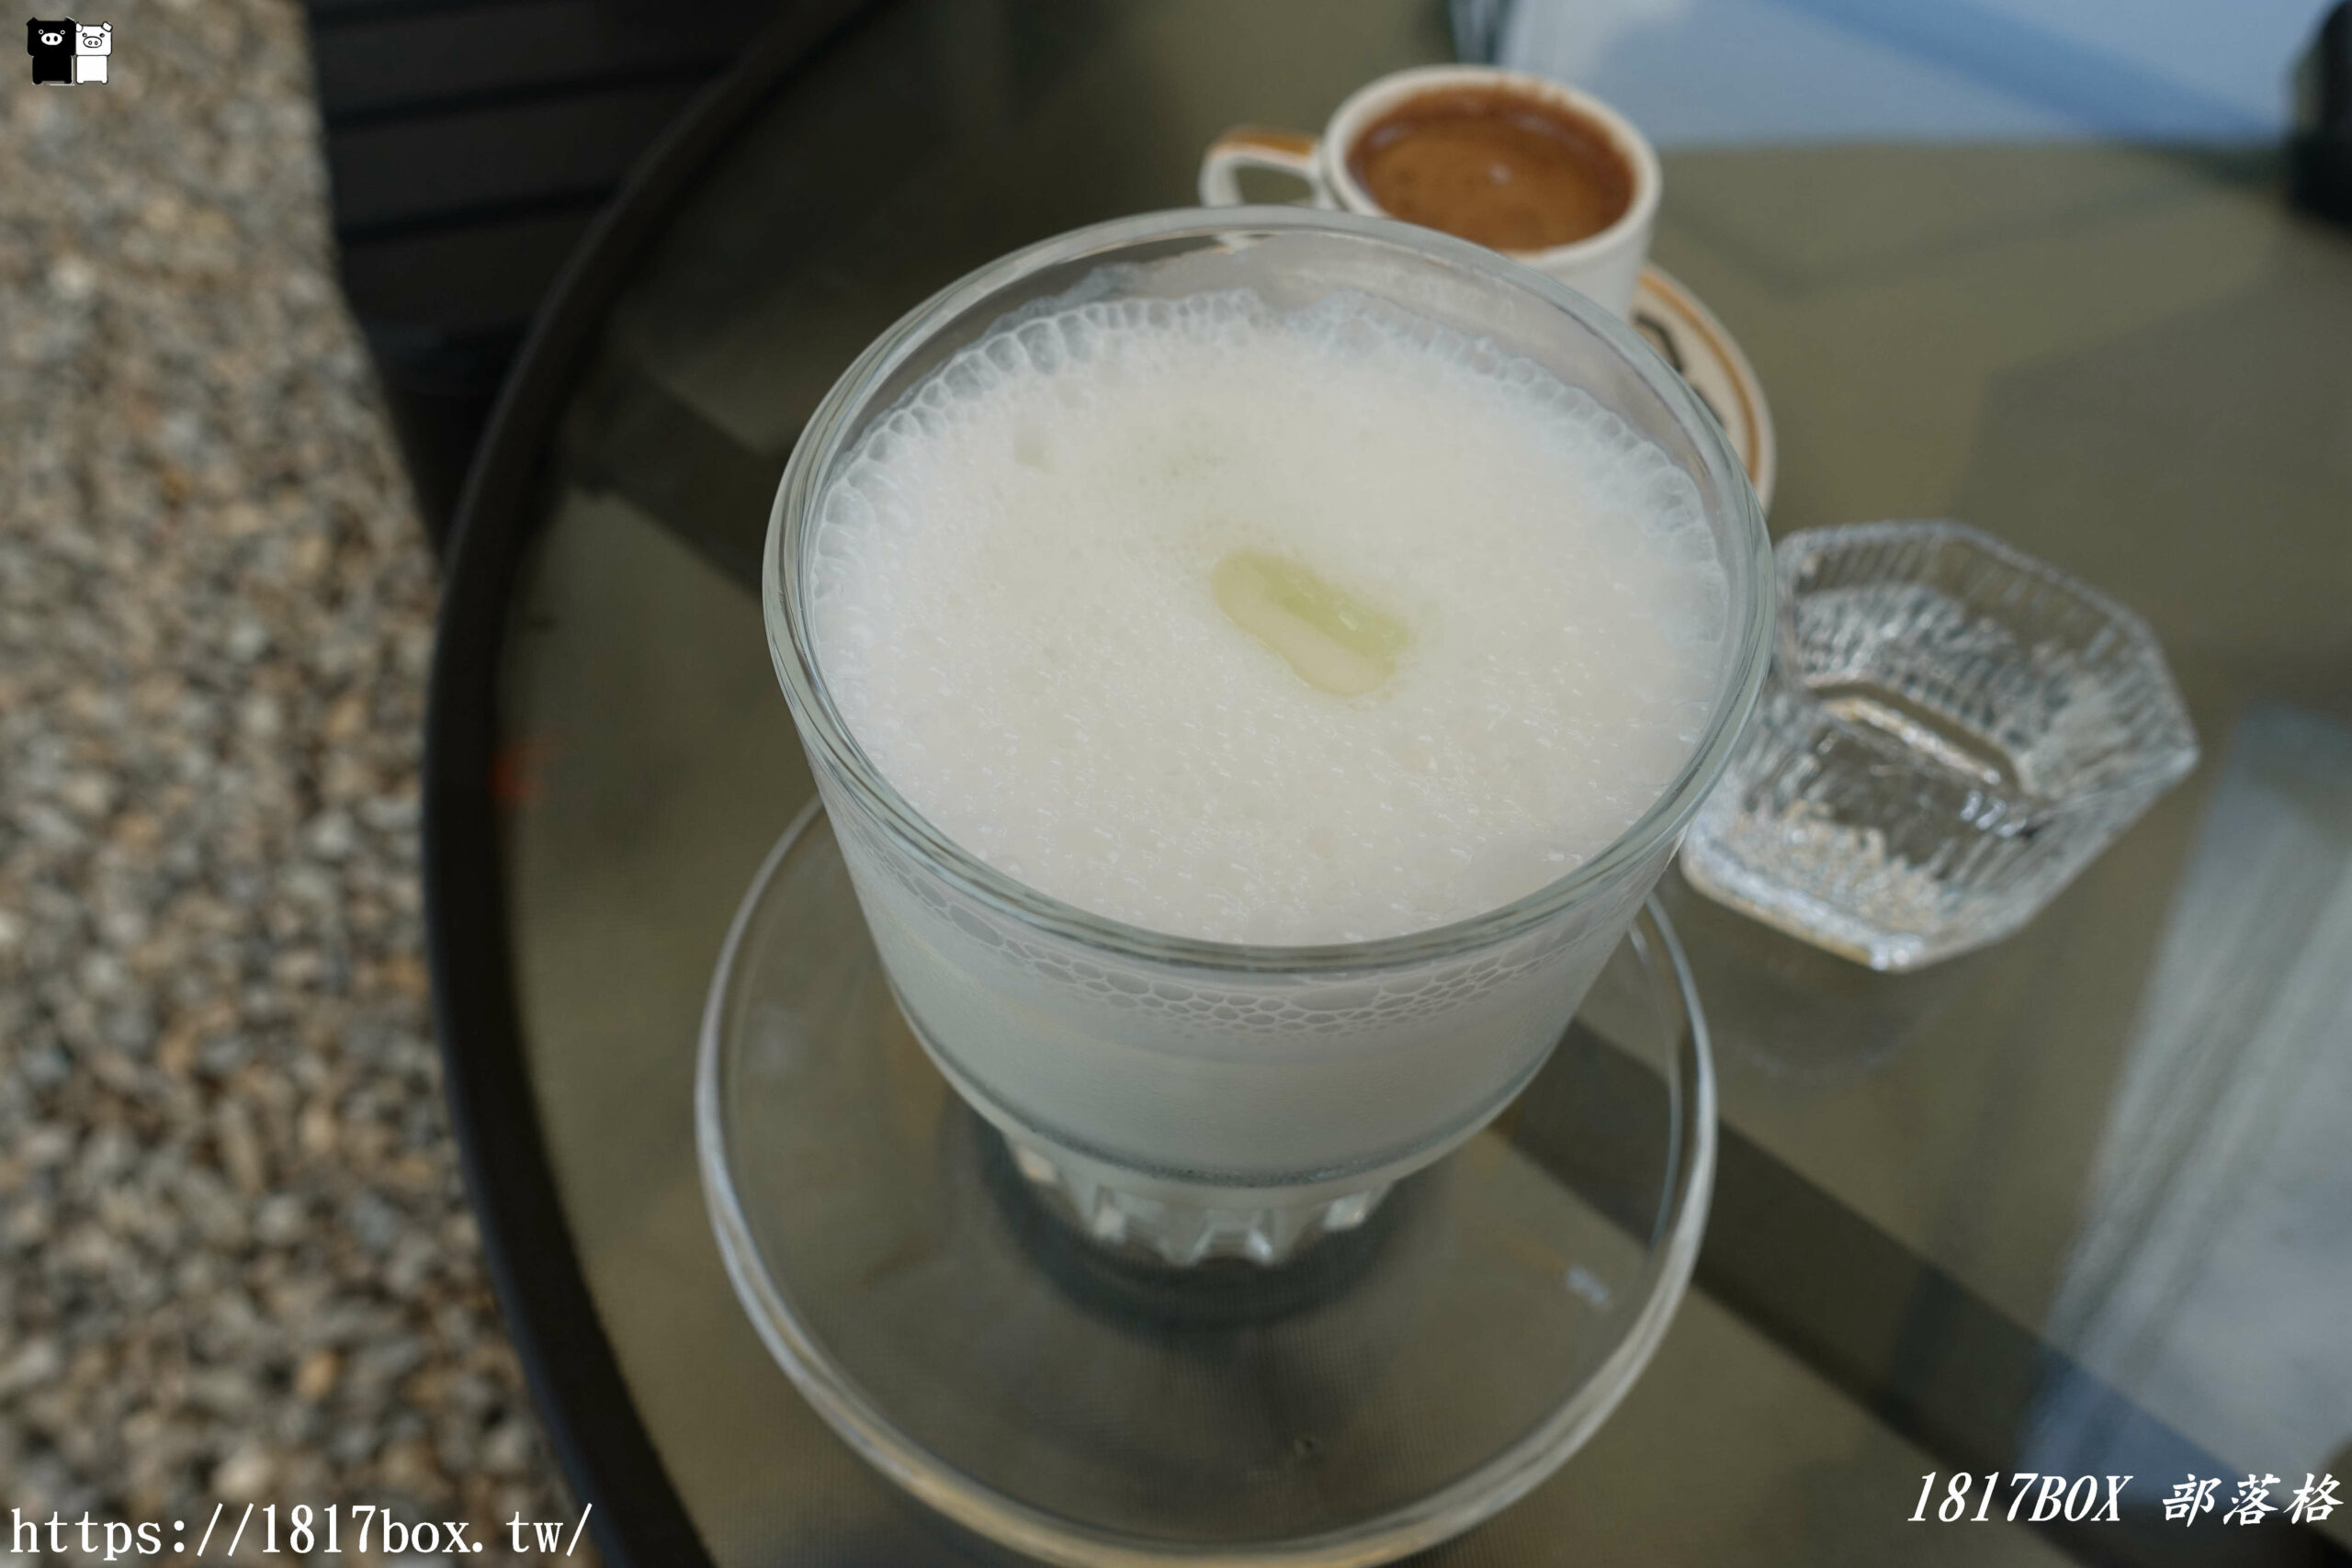 【彰化。芬園】Cafe Yenge 岩槿咖啡。土耳其咖啡廳。波西米亞風格花園